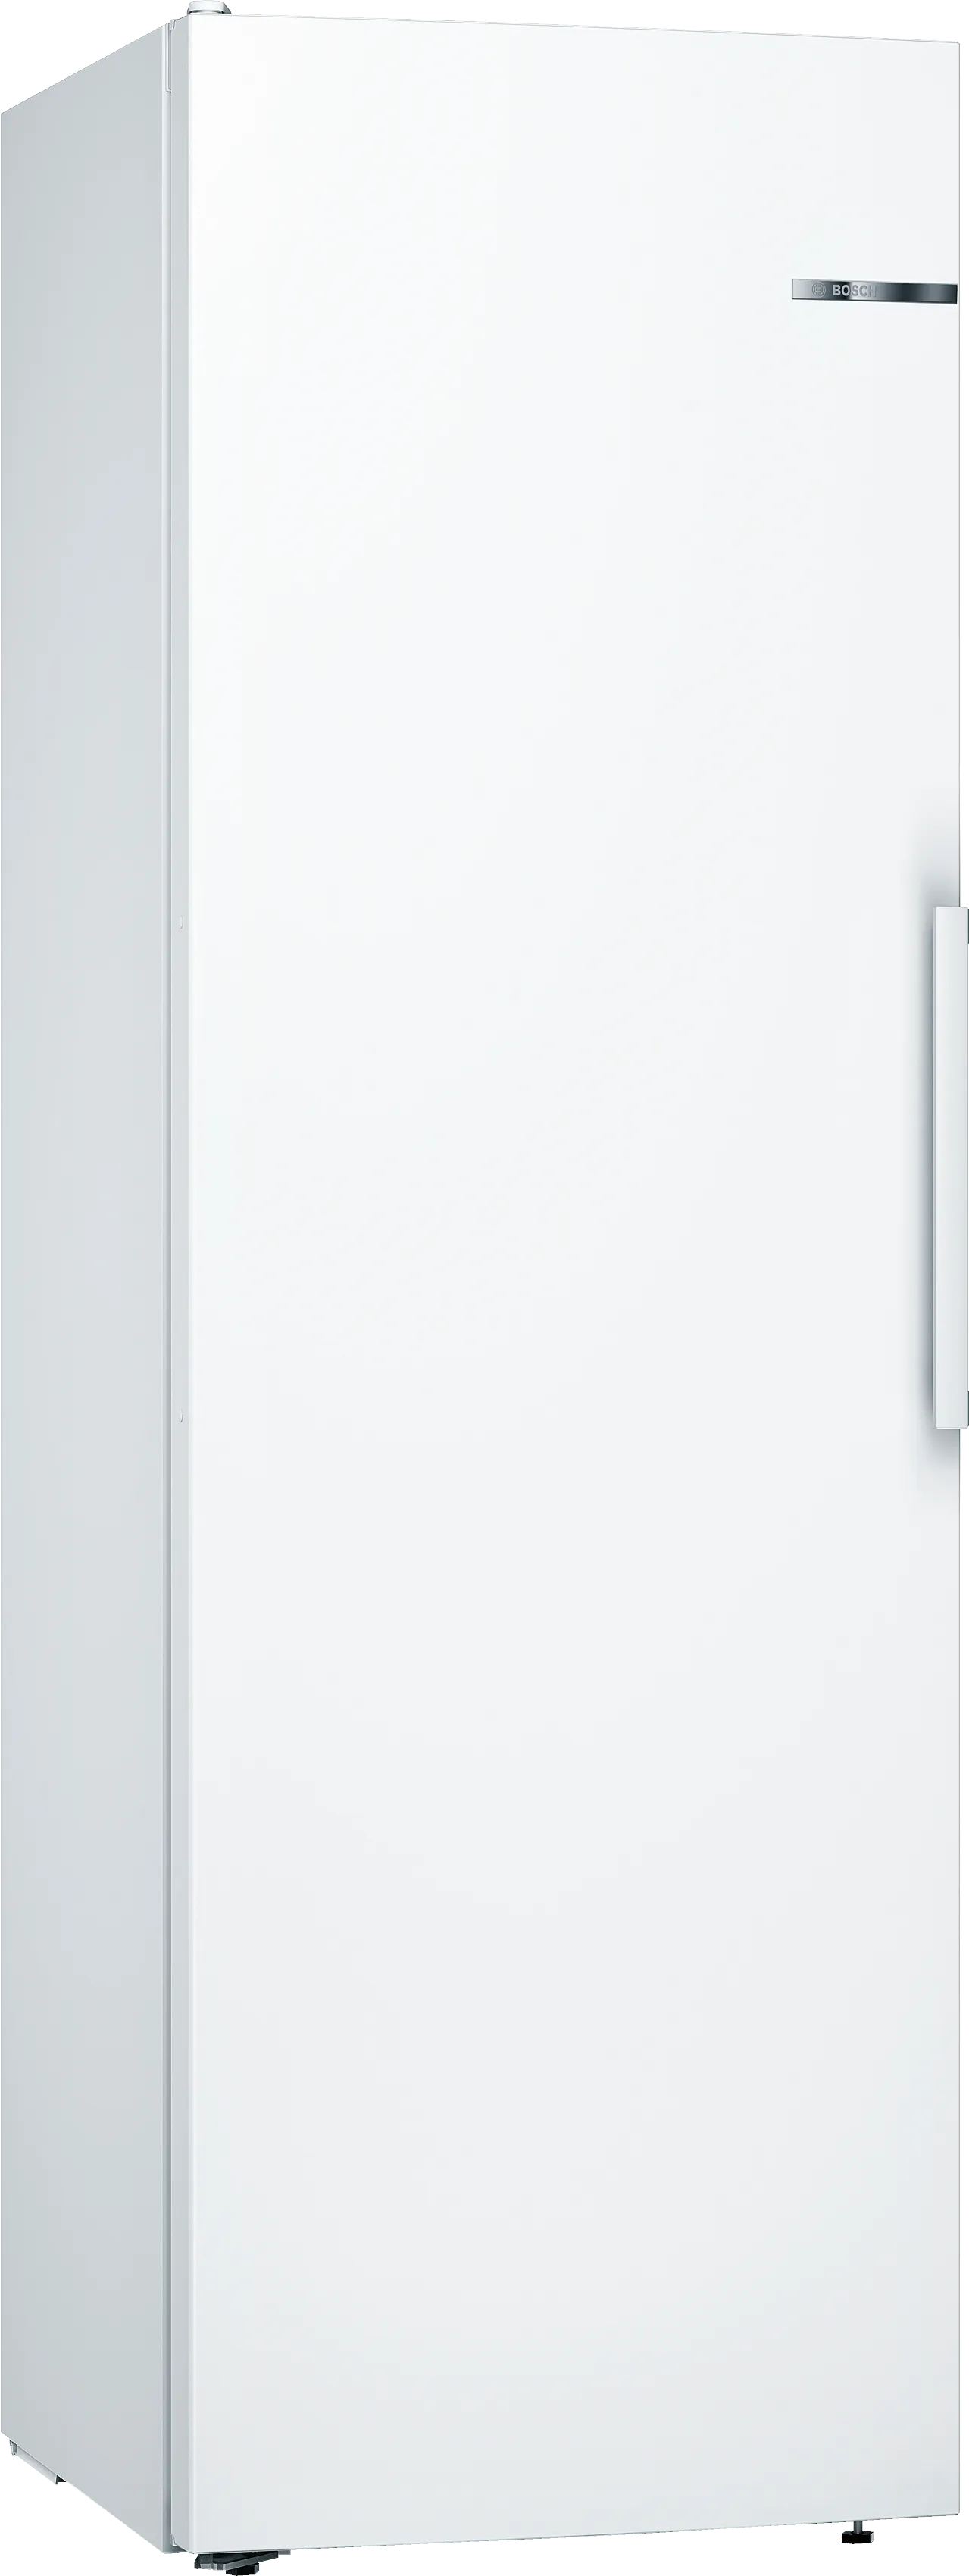 Serie 4 Freistehender Kühlschrank 186 x 60 cm Weiß 